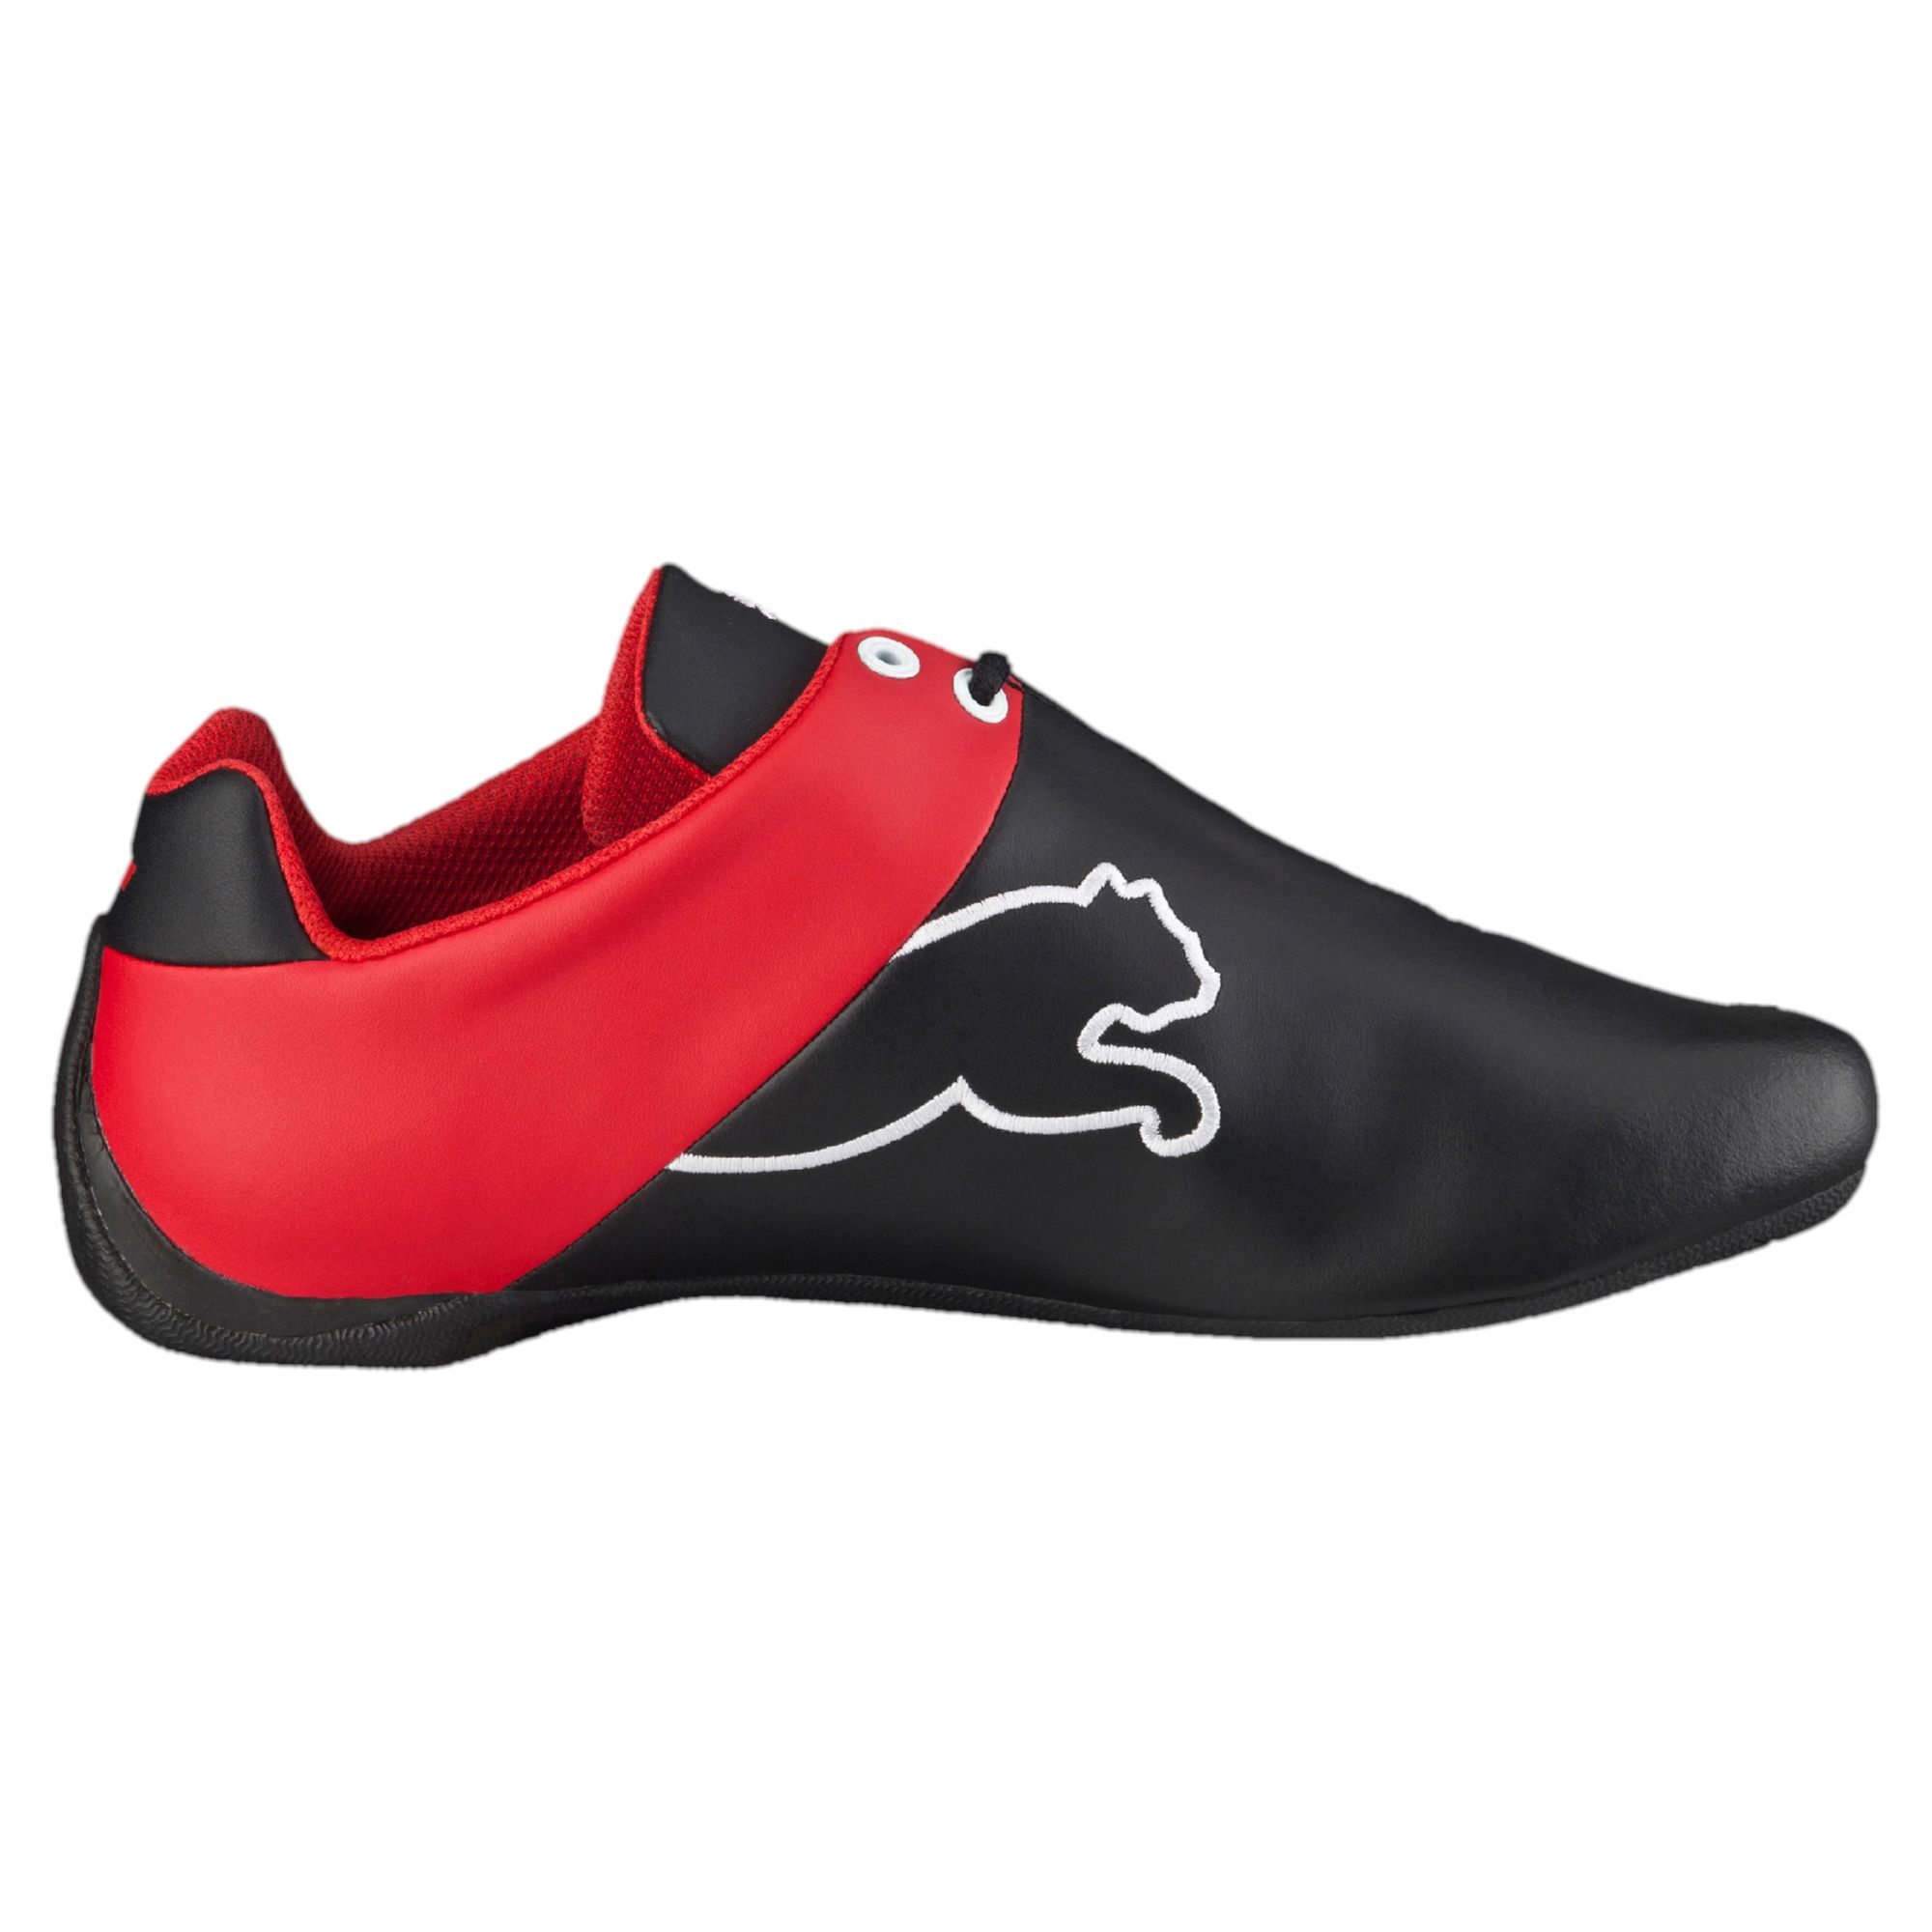 Puma Future Cat Leather Ferrari OG Мъжки спортни обувки 305822-01